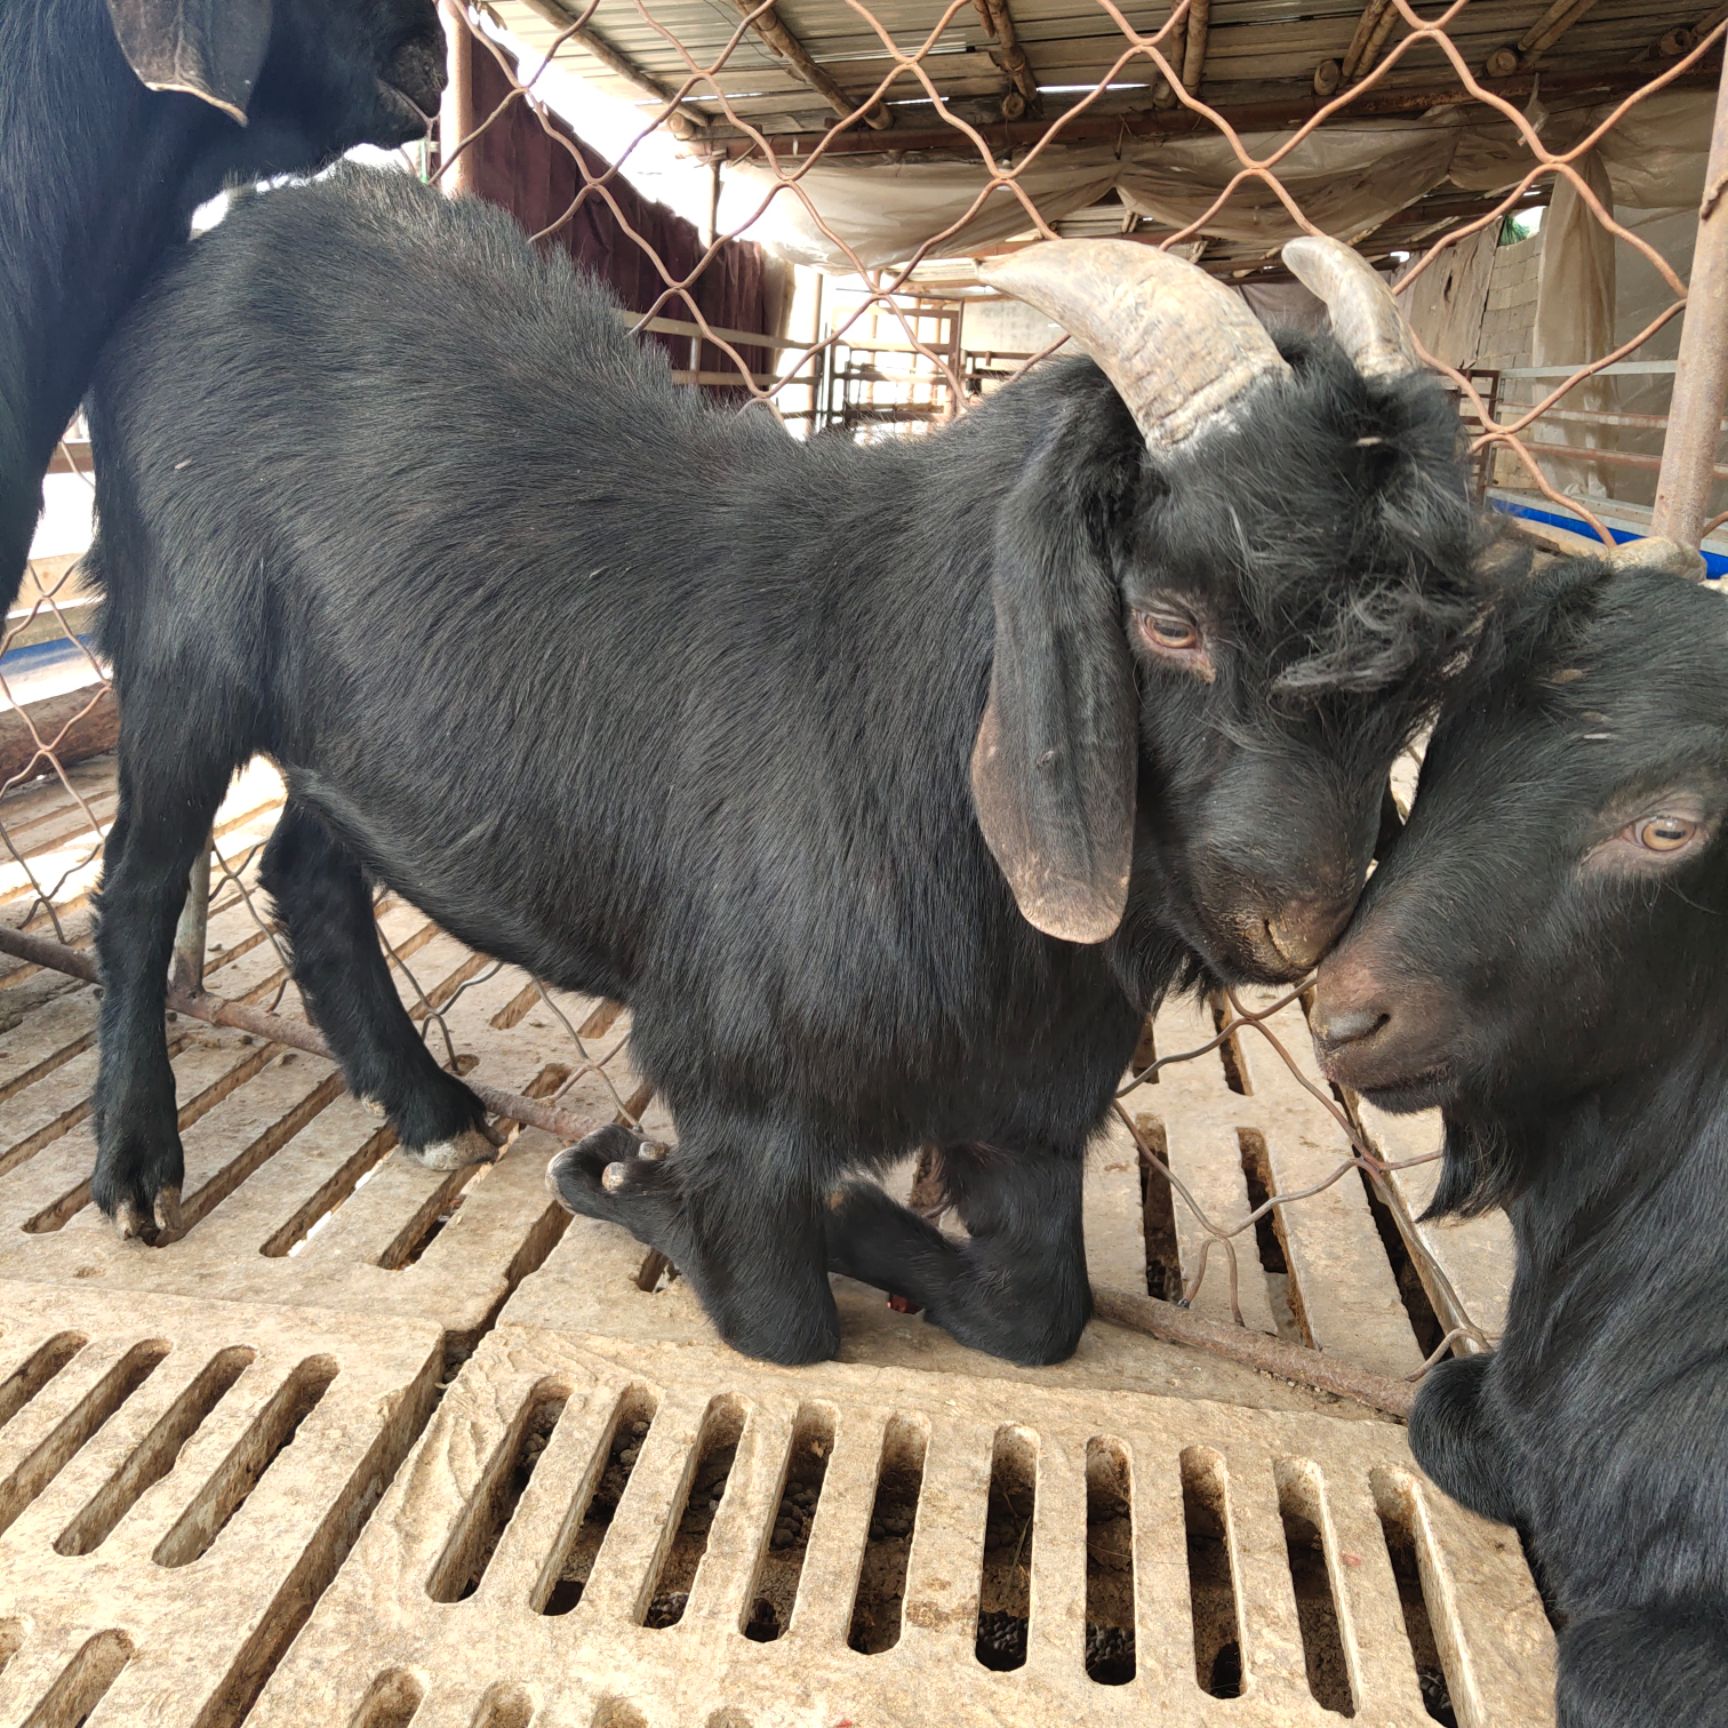 常年出售黑山羊,提供优质种公羊,种母羊,育肥羊,肉羊,货源充足.